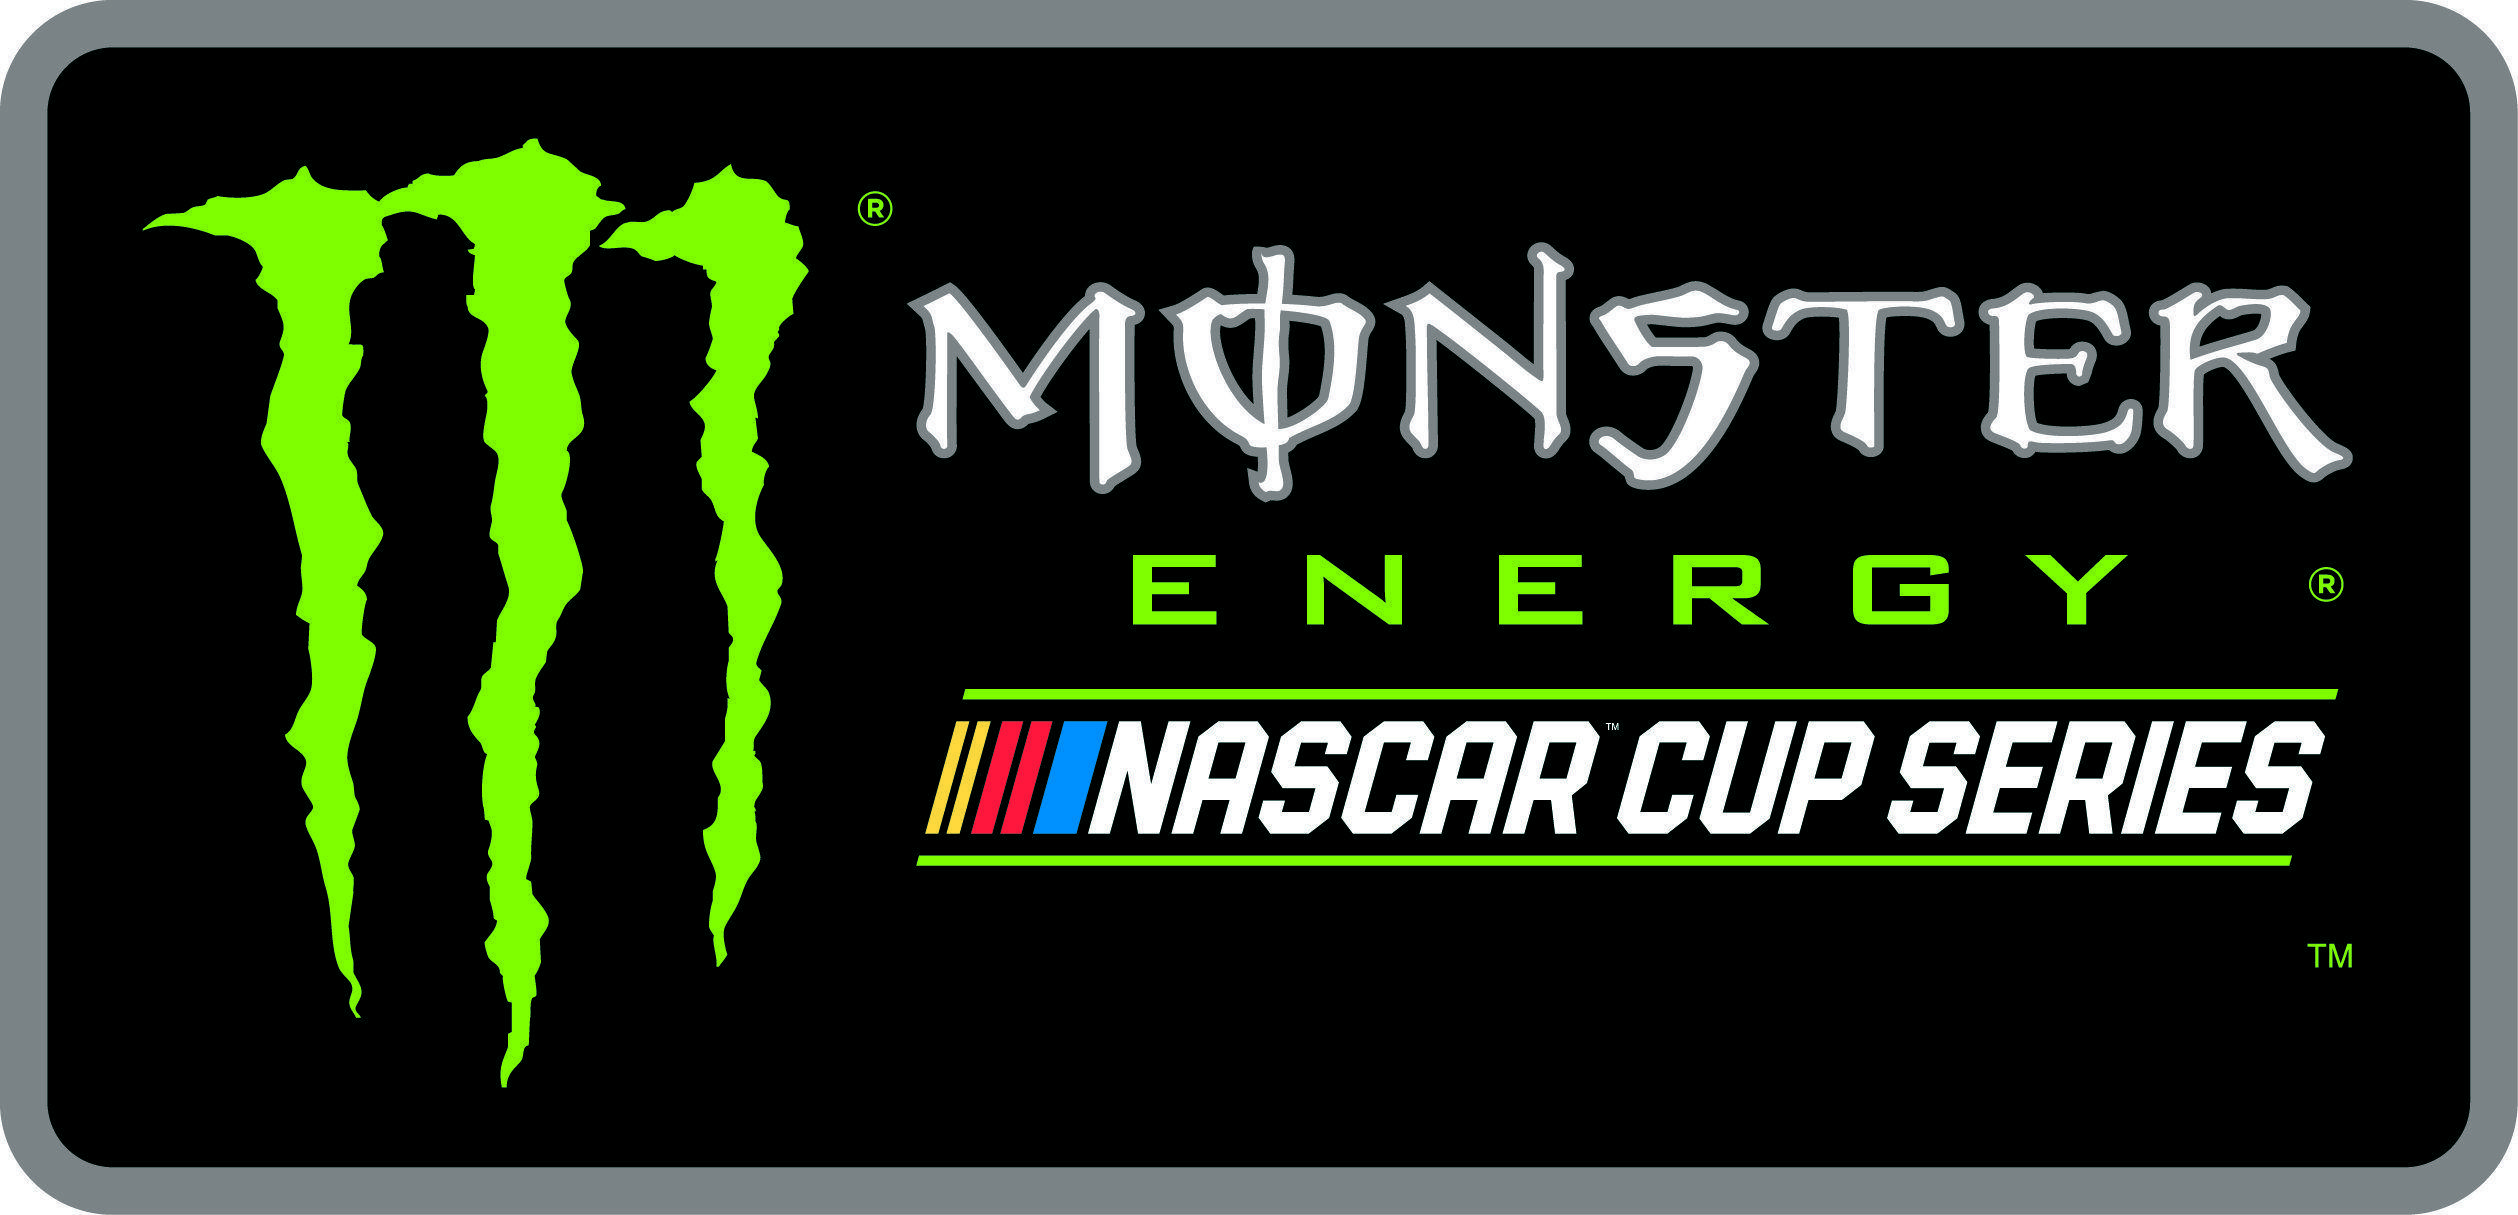 White Monster Energy Logo - New NASCAR Logo and Monster Energy NASCAR Cup Series Logo